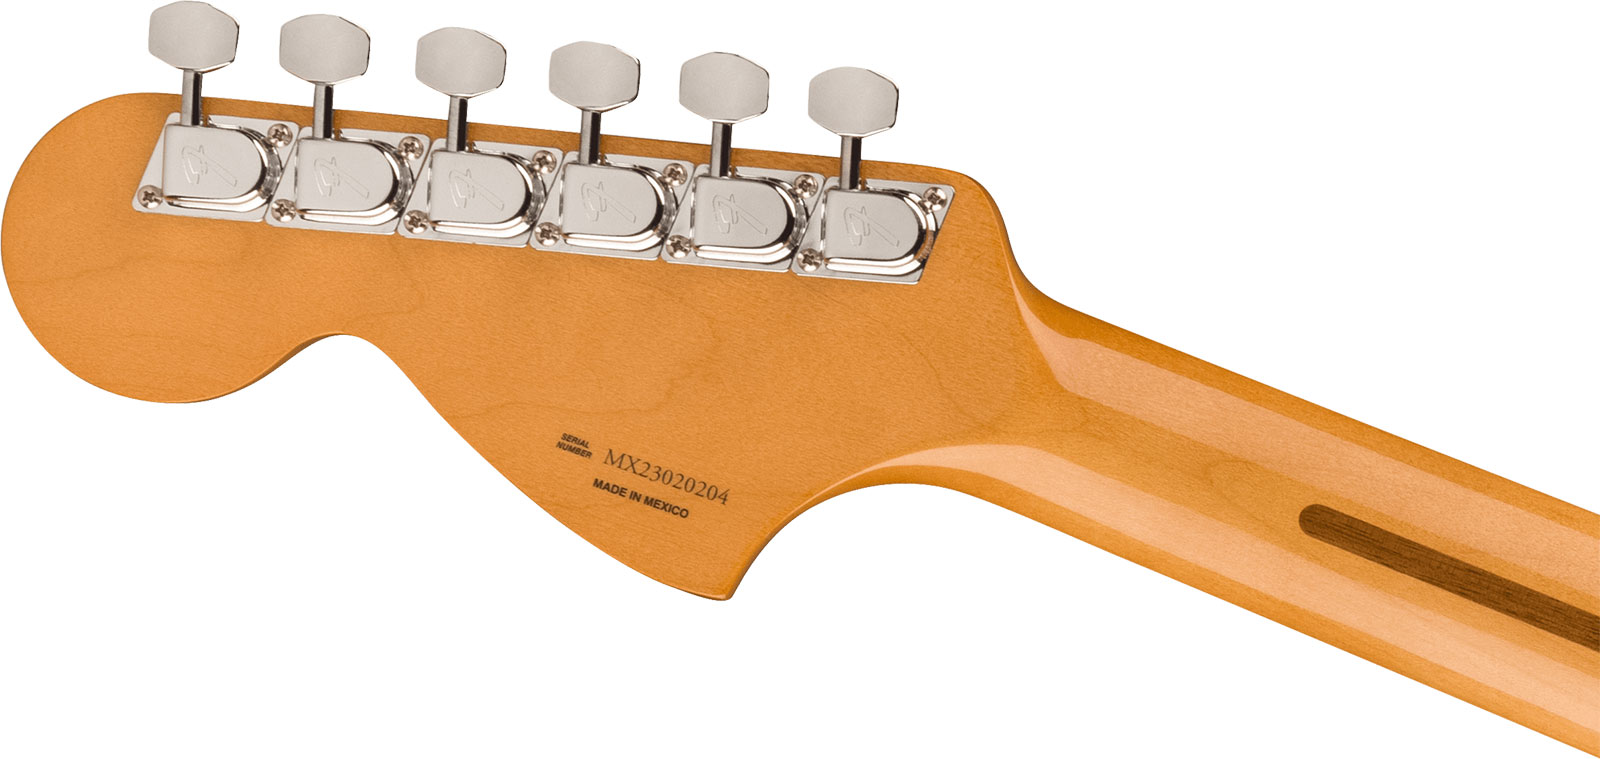 Fender Strat 70s Vintera 2 Mex 3s Trem Mn - 3-color Sunburst - Str shape electric guitar - Variation 3